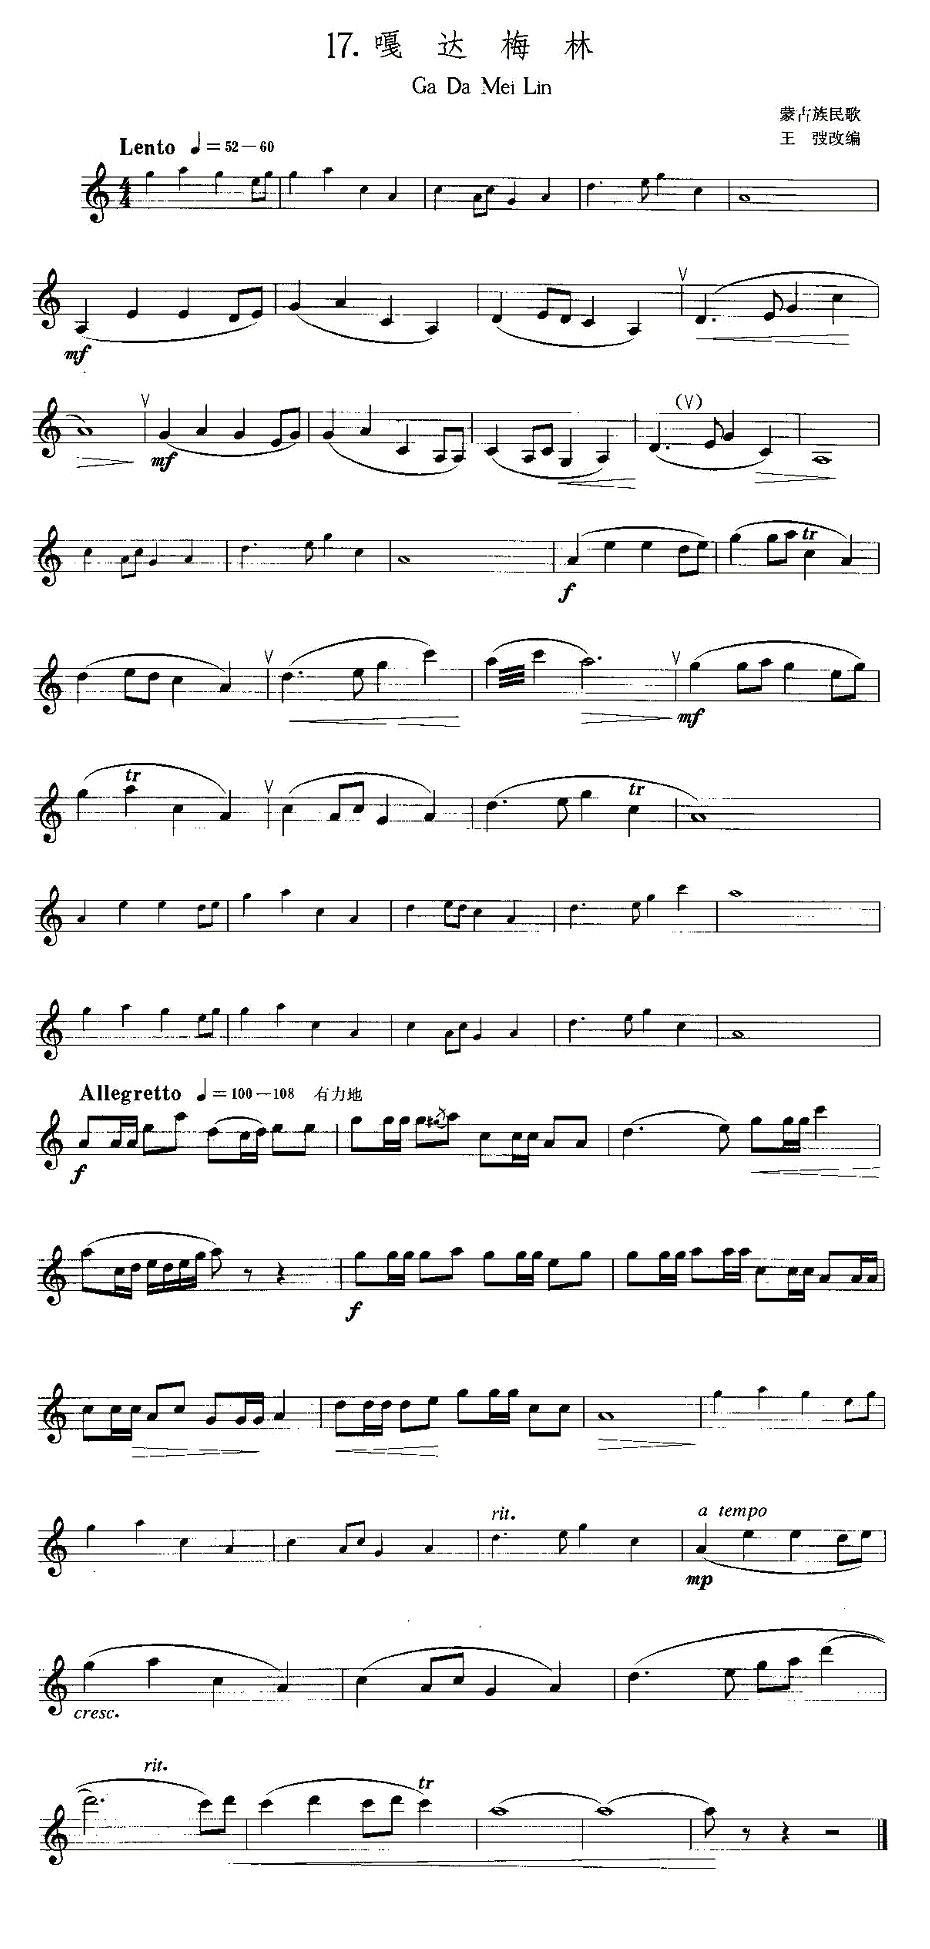 22首中国民歌乐谱之17、嘎达梅林萨克斯曲谱（图1）